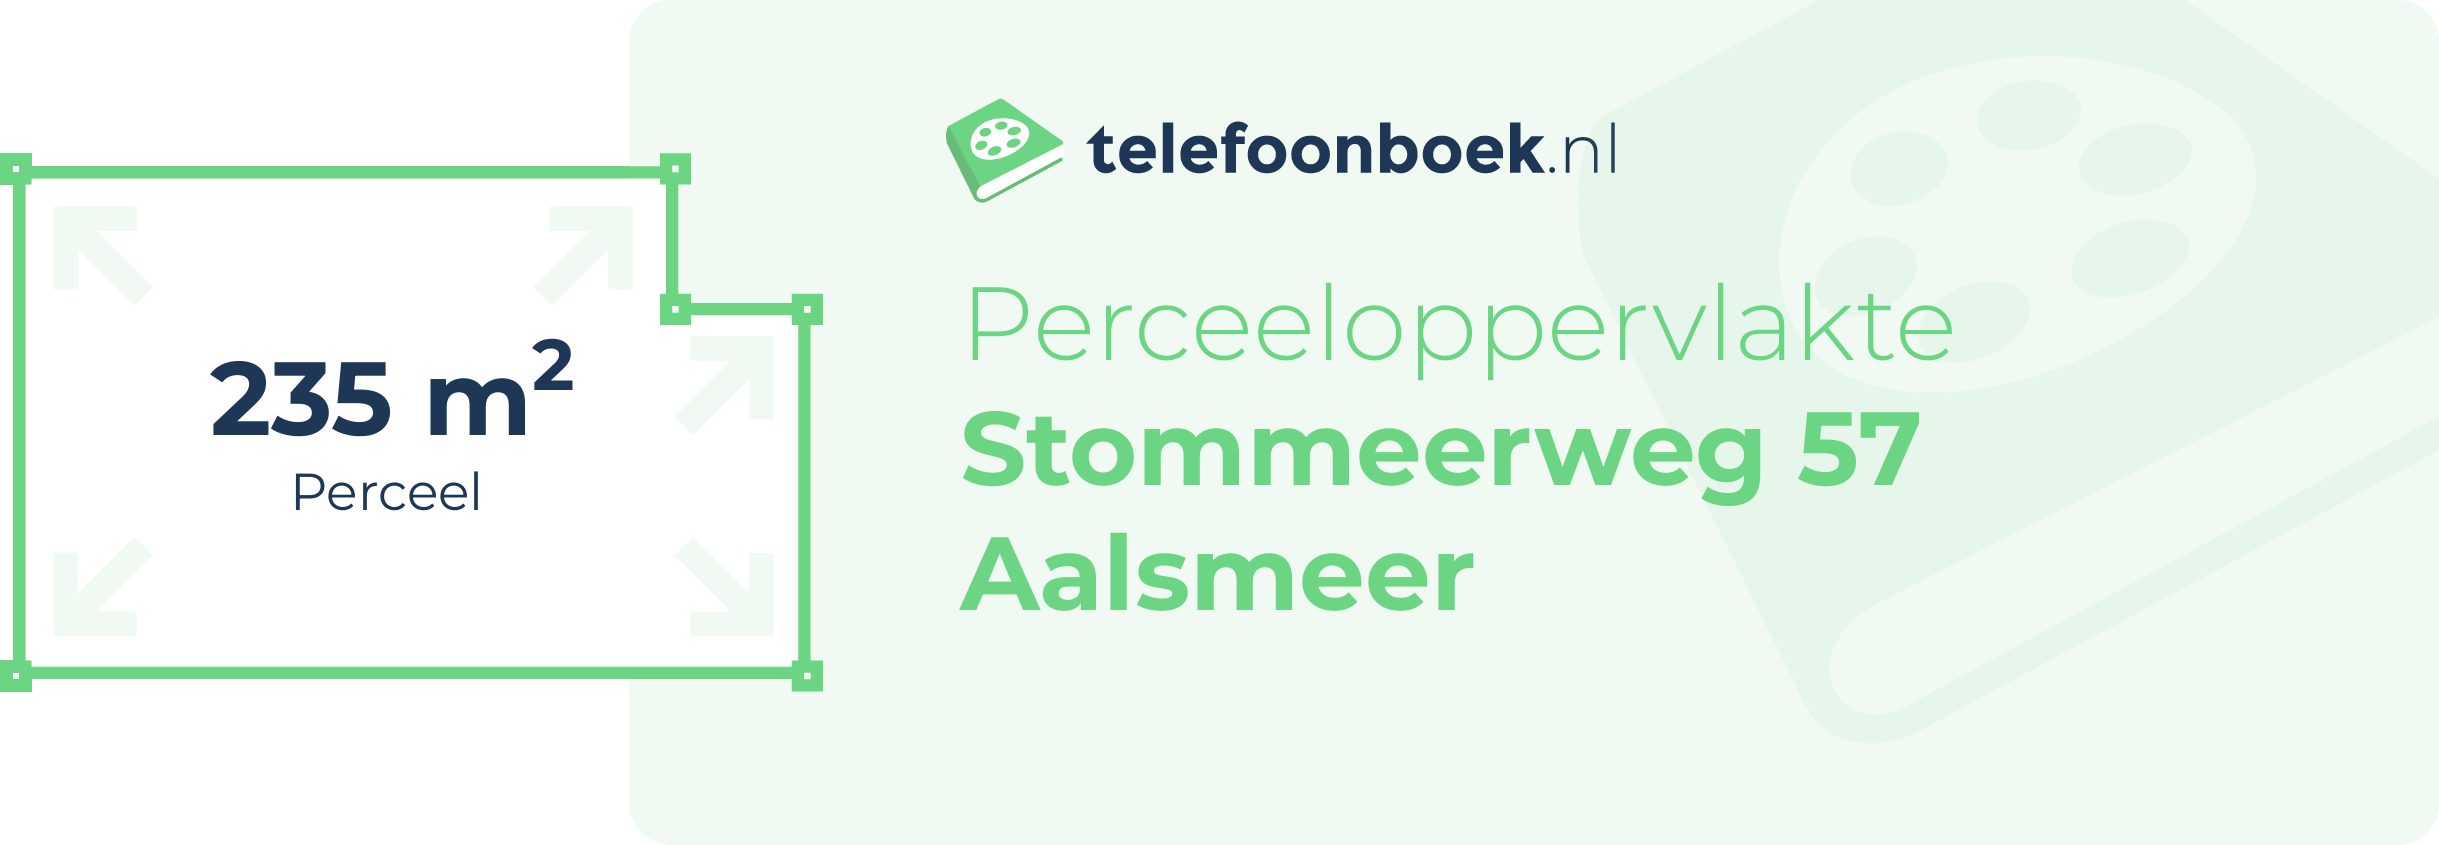 Perceeloppervlakte Stommeerweg 57 Aalsmeer